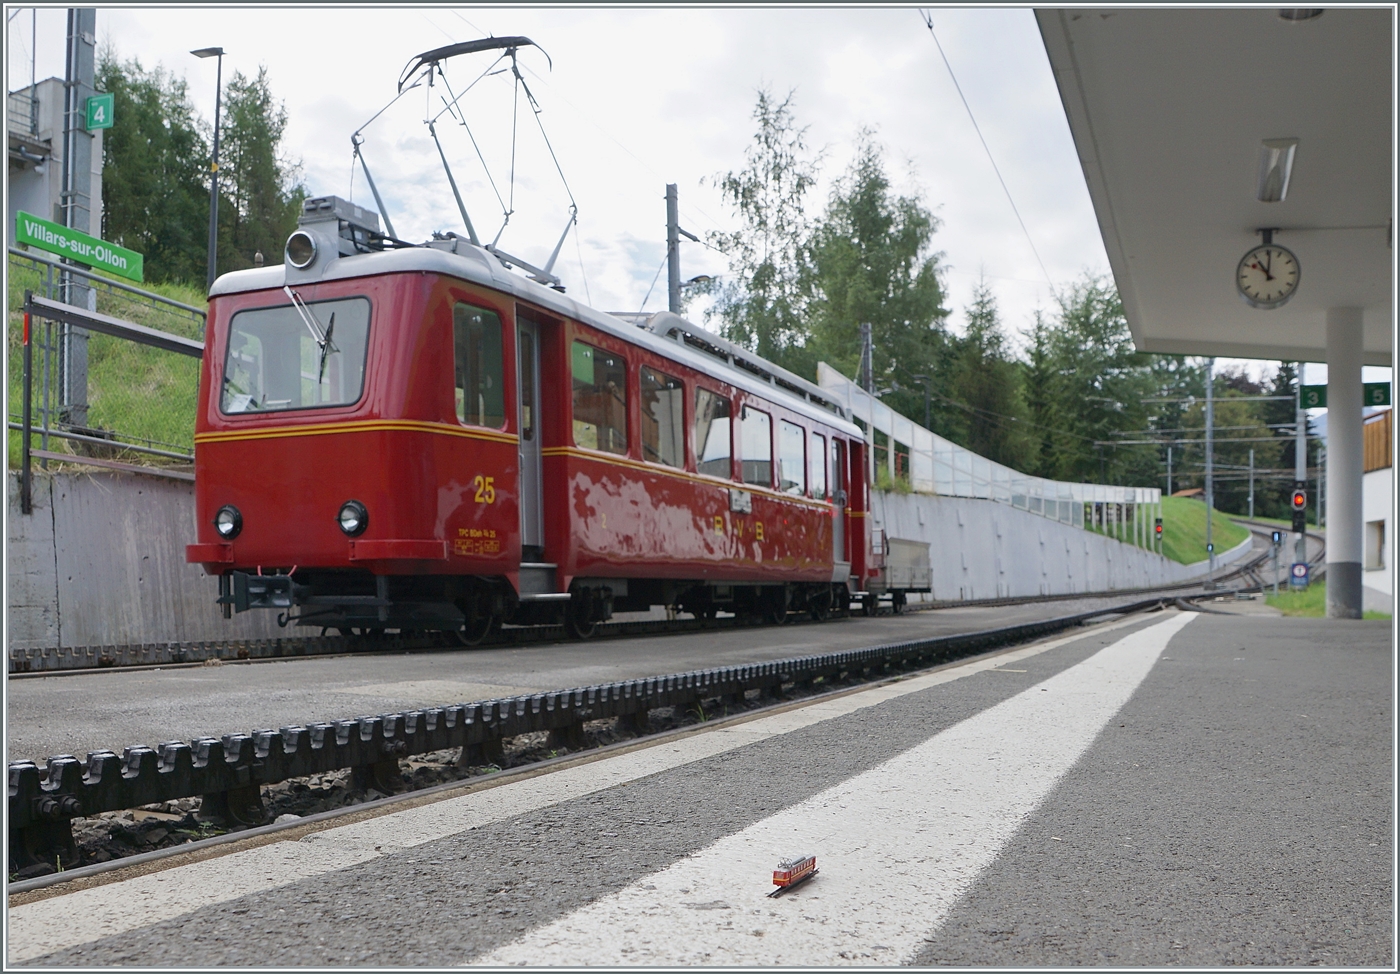 Schon fast ein Zugsuchbild: ZWEI BVB B(D)eh 2/4 stehen in Villars sur Ollon.

19. August 2023